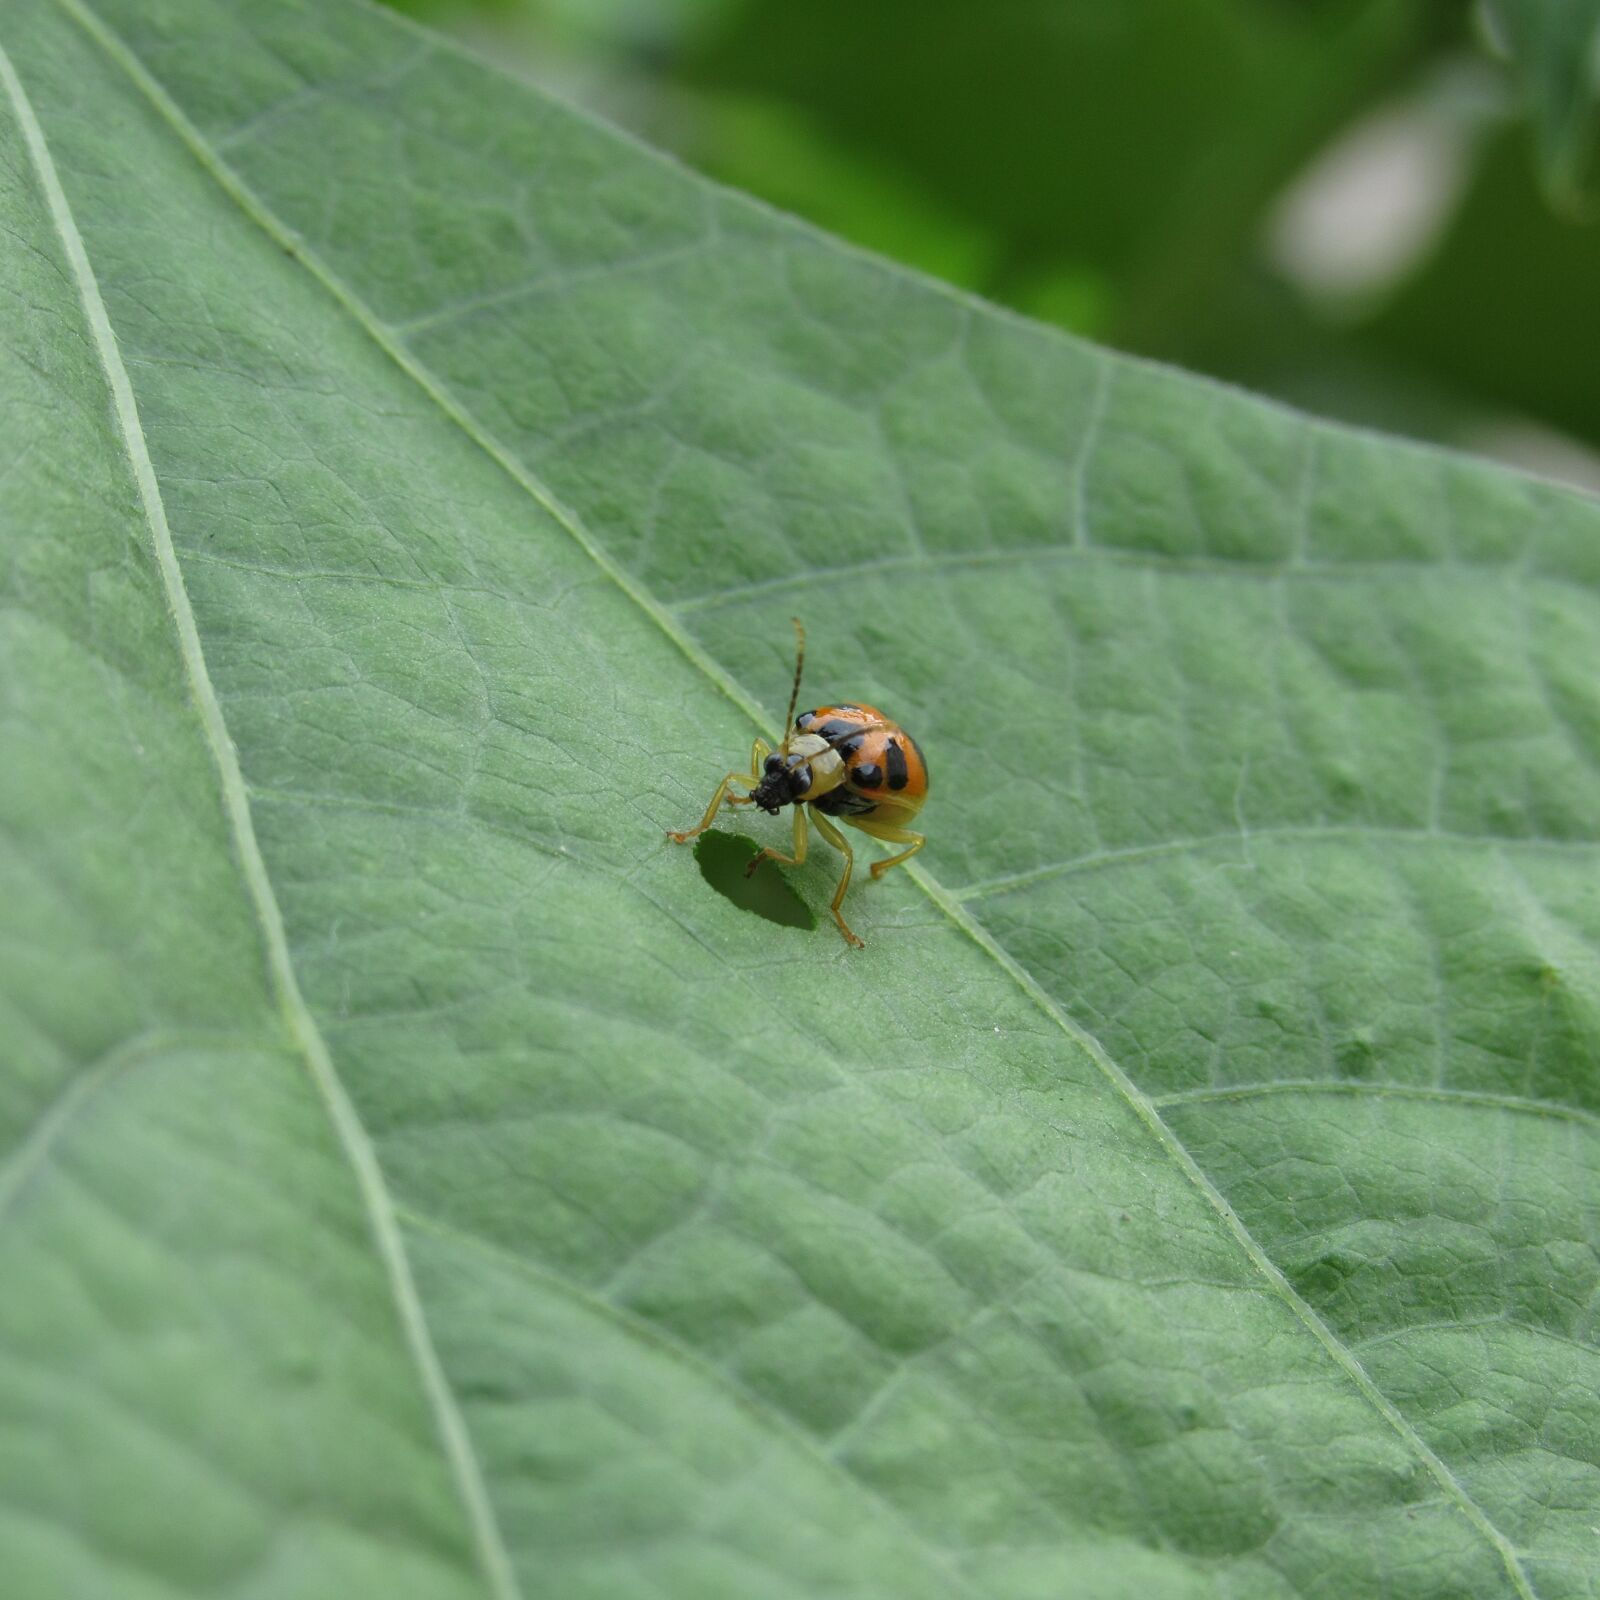 Canon PowerShot SX520 HS sample photo. Nature, leaf, ladybug photography